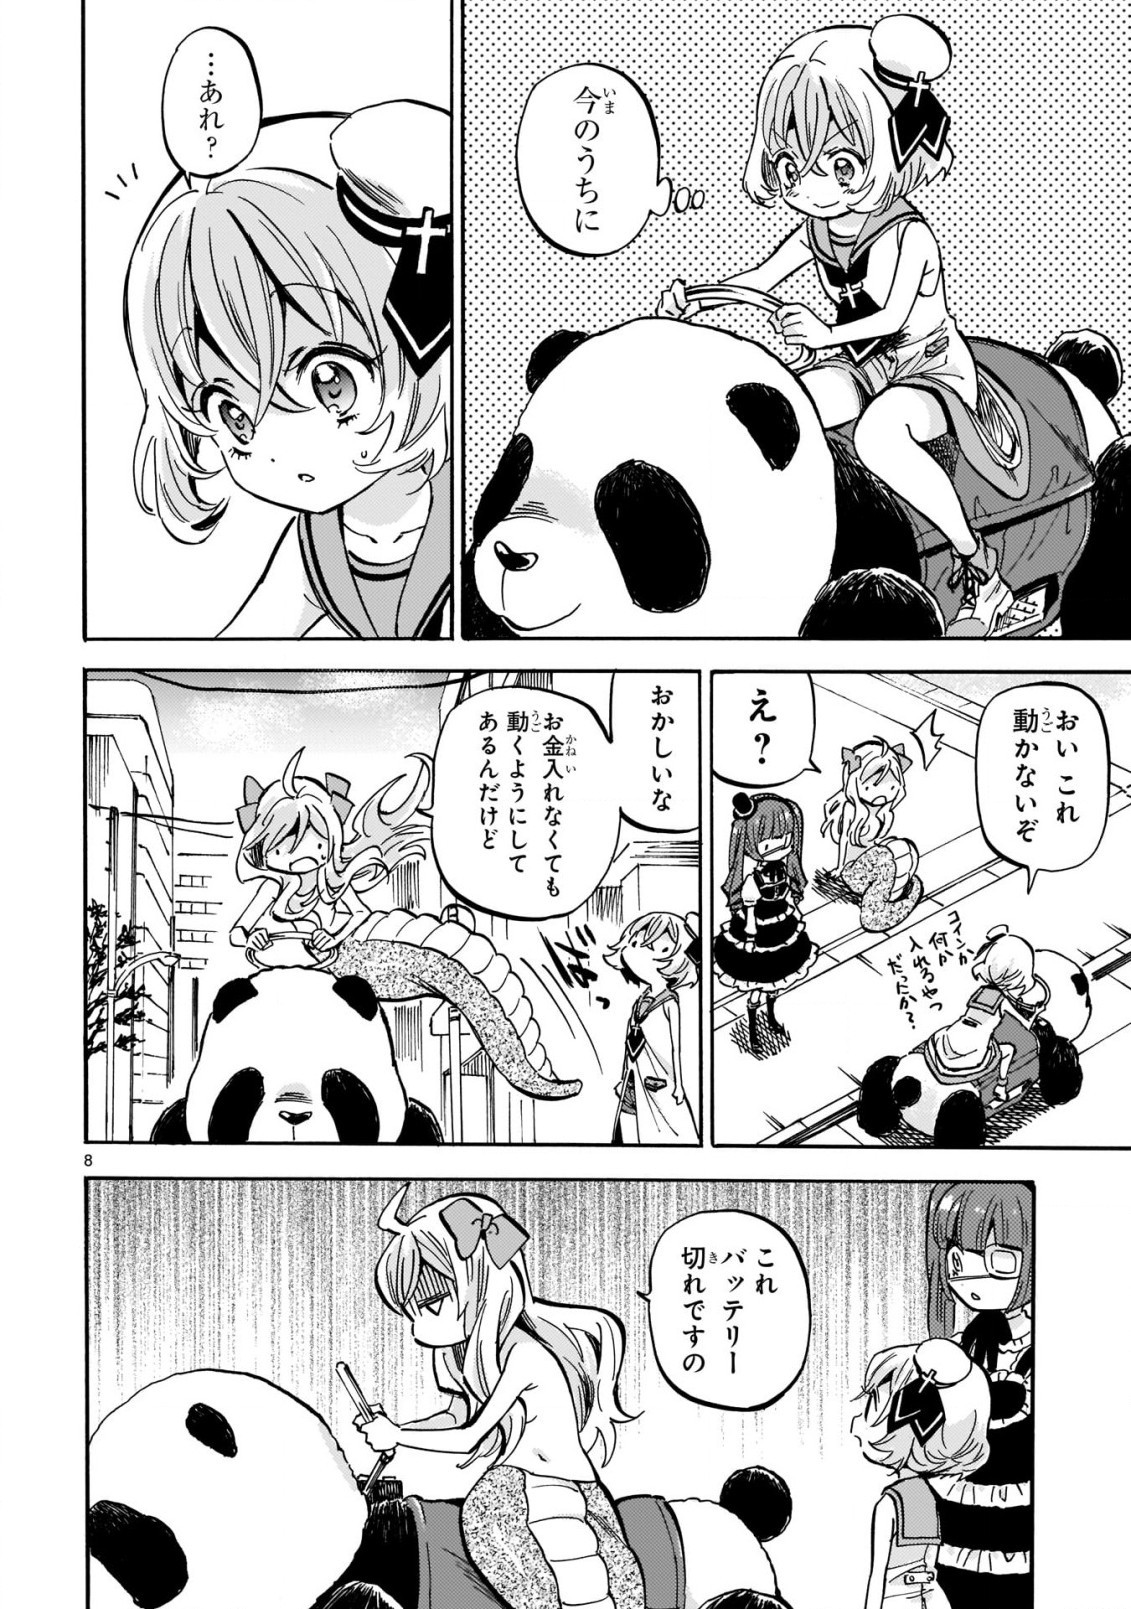 Jashin-chan Dropkick - Chapter 207 - Page 8